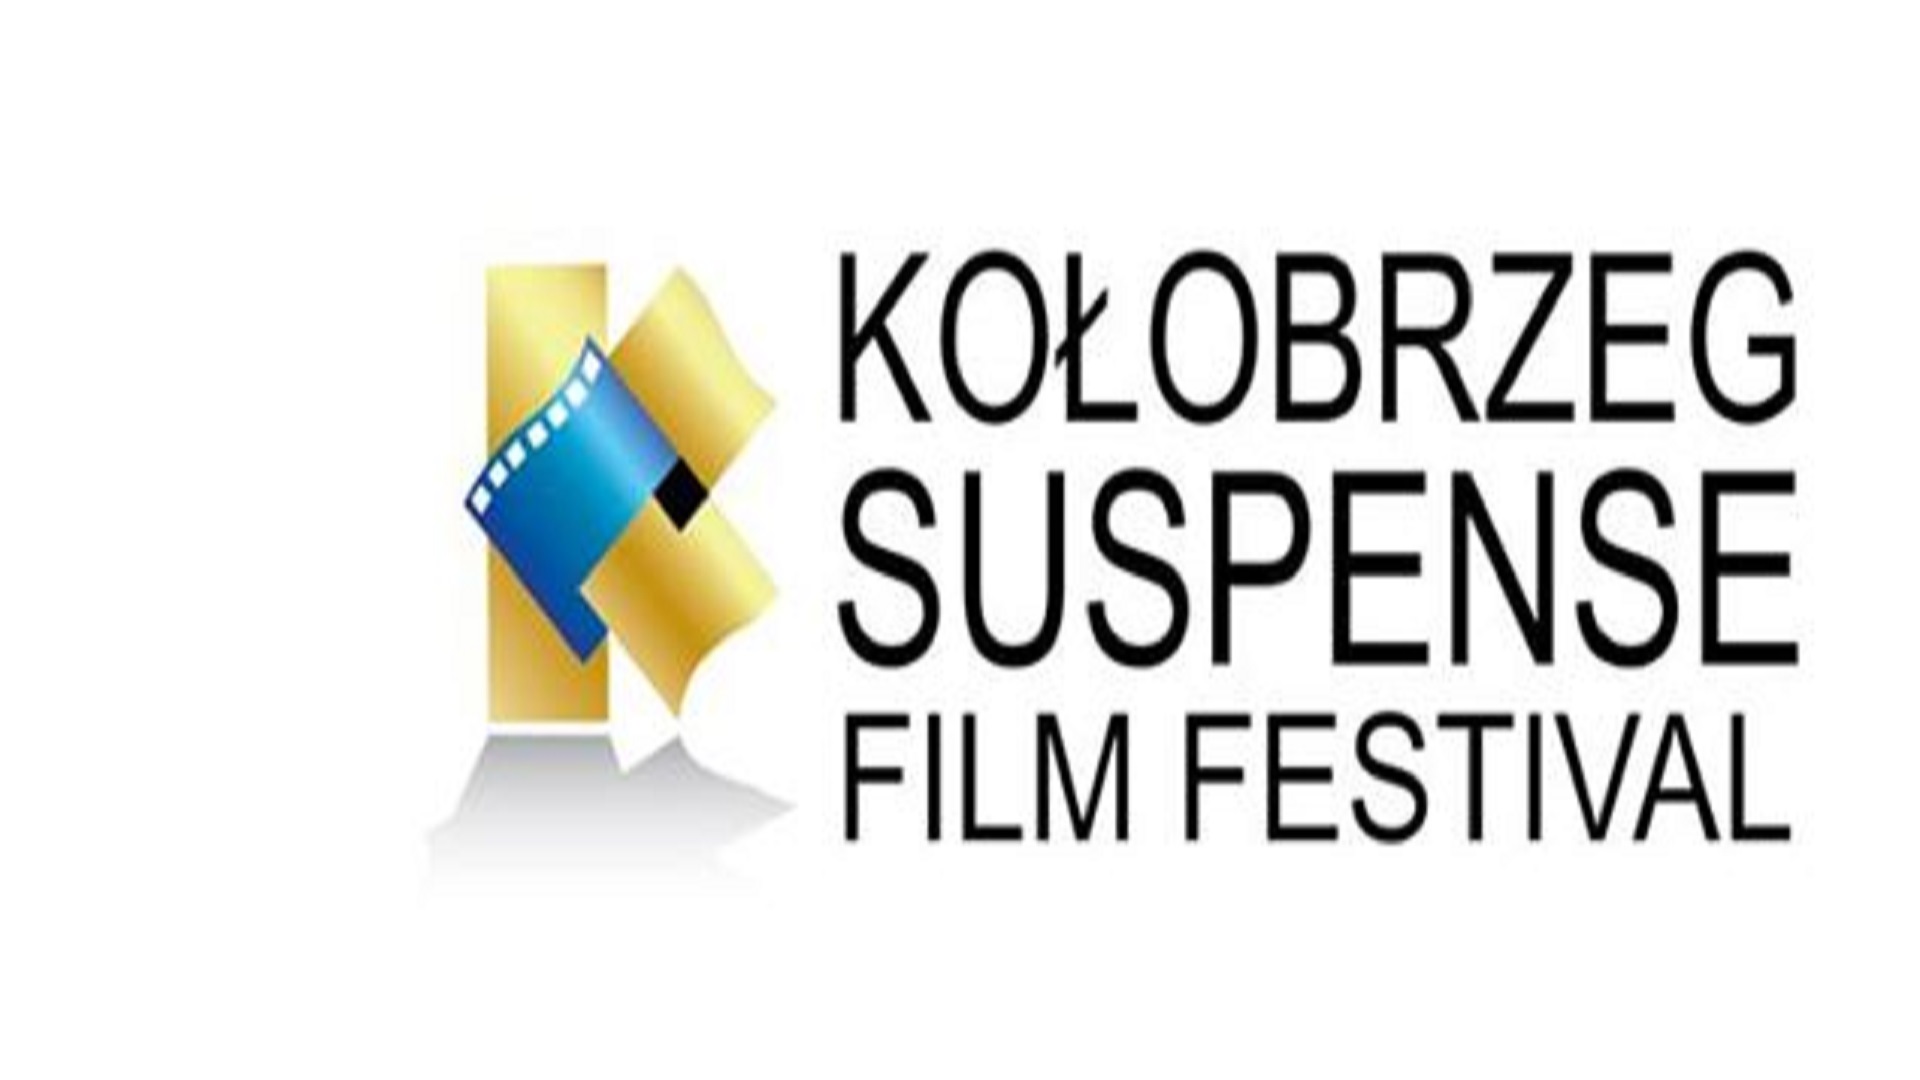 EoF & Kolobrzeg Suspense Film Festival